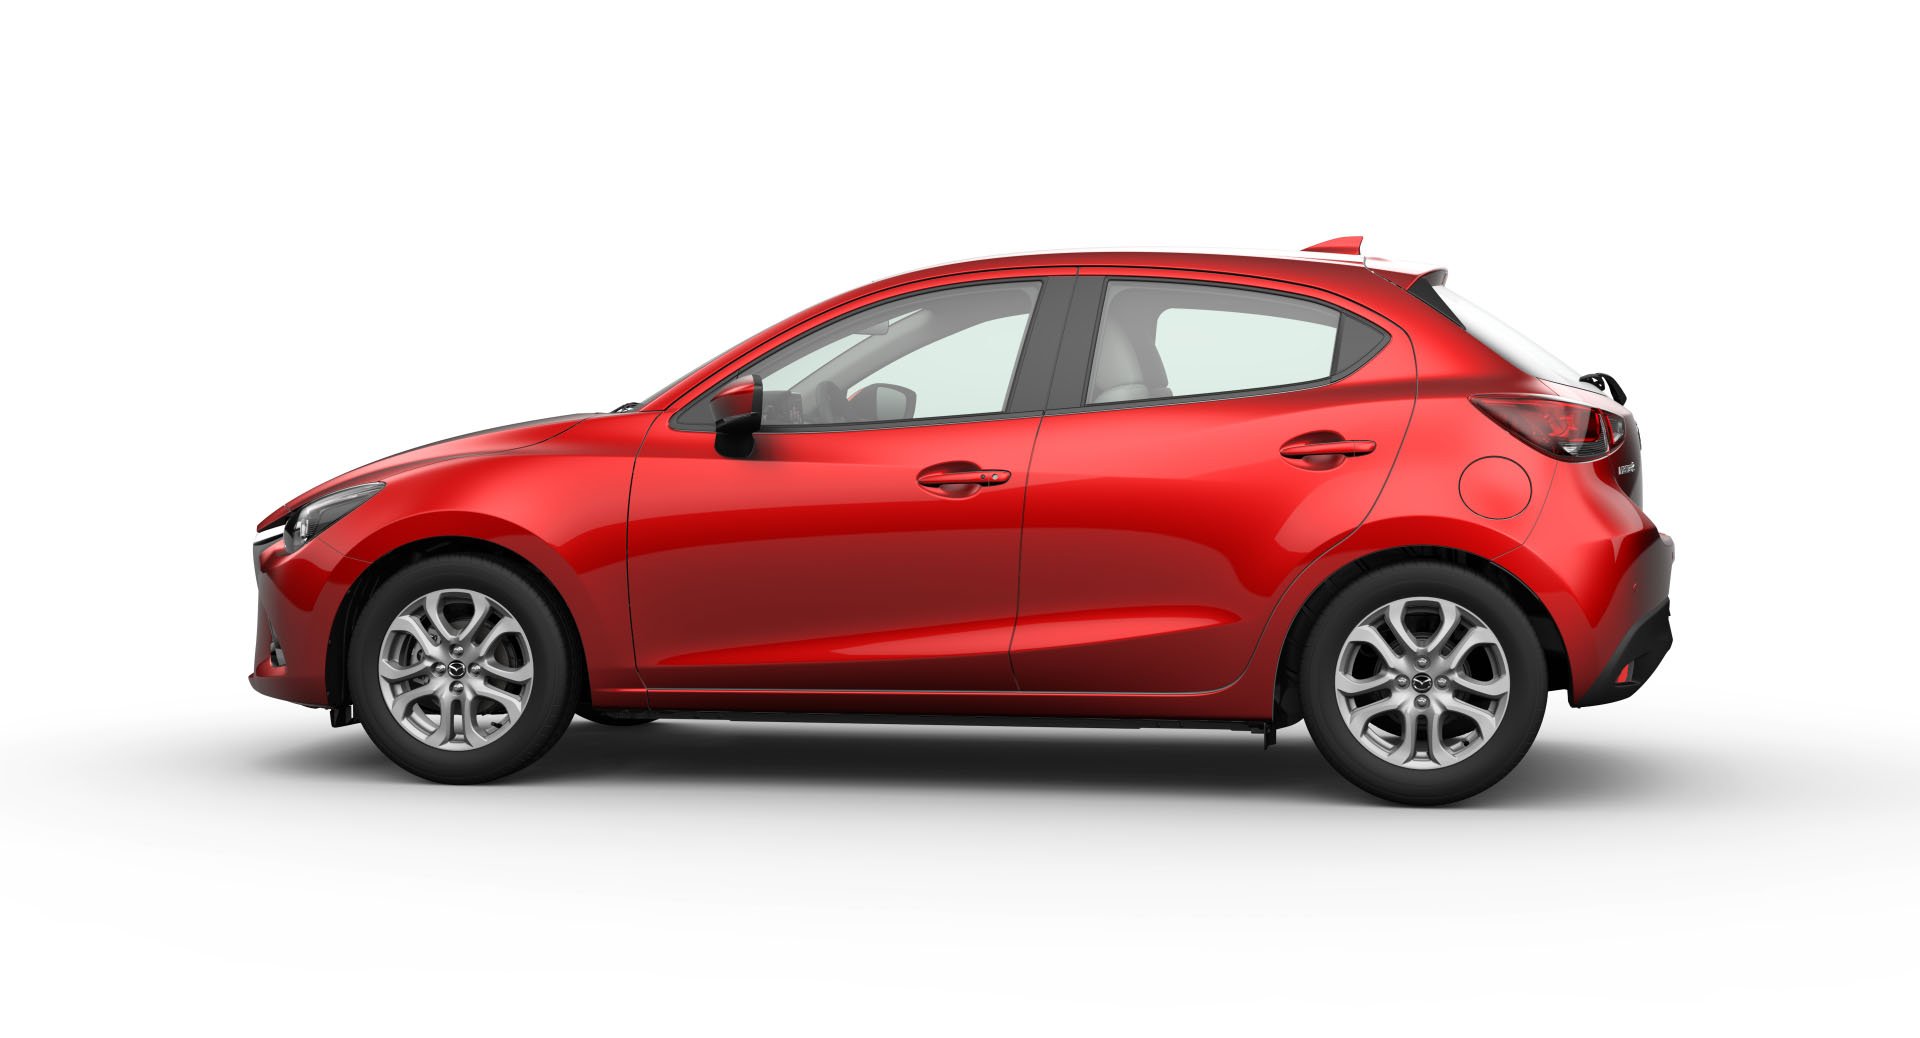 Mazda Demio exterior - Side Profile